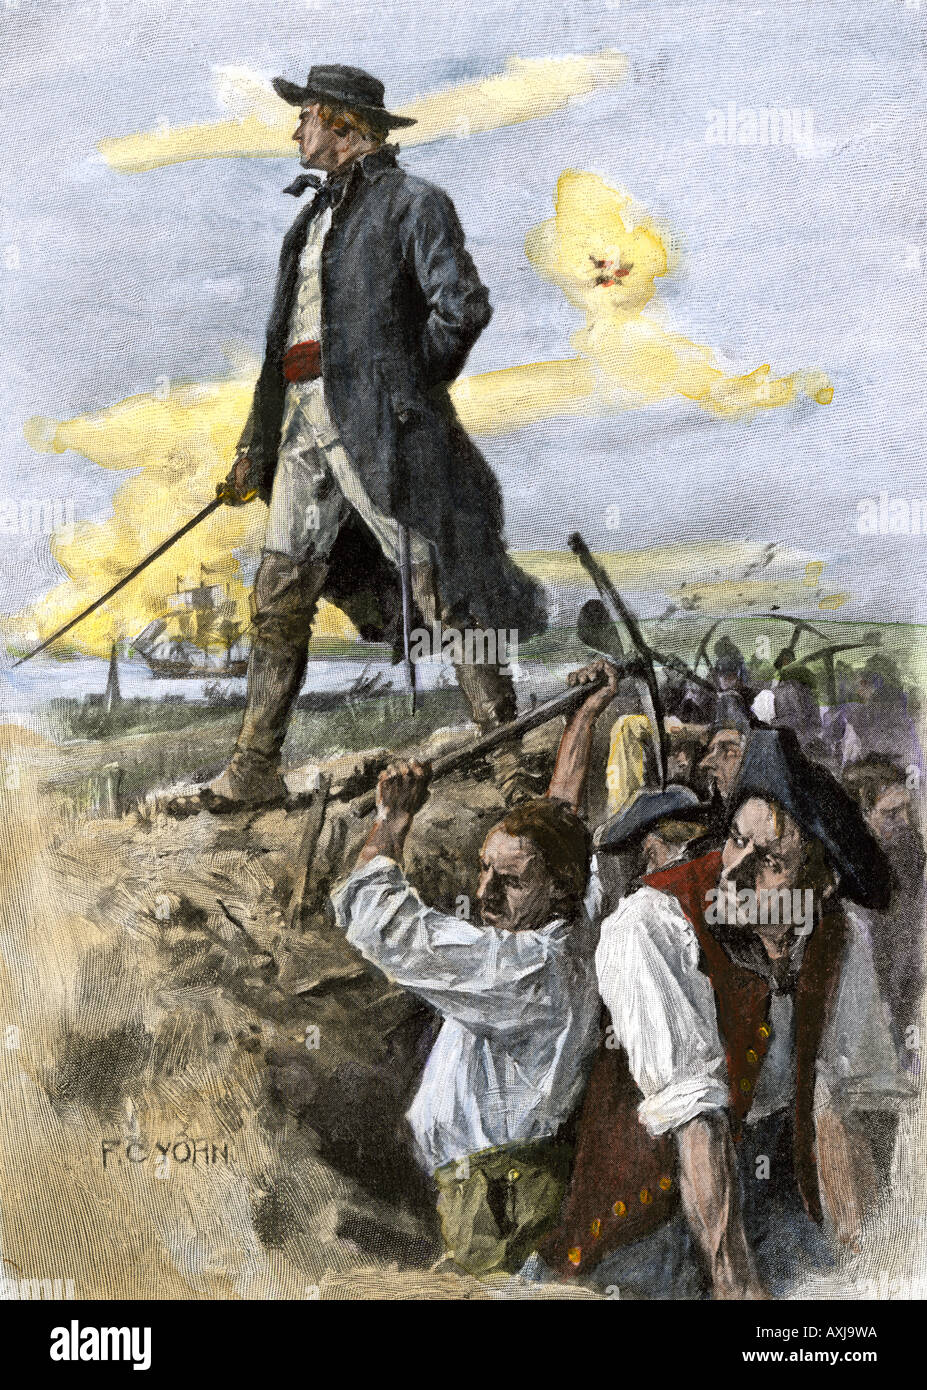 William Prescott auf Befehl der amerikanischen Minutemen verteidigenden Bunker Hill 1775. Handcolorierte halftone einer F.C. Yohn Abbildung Stockfoto